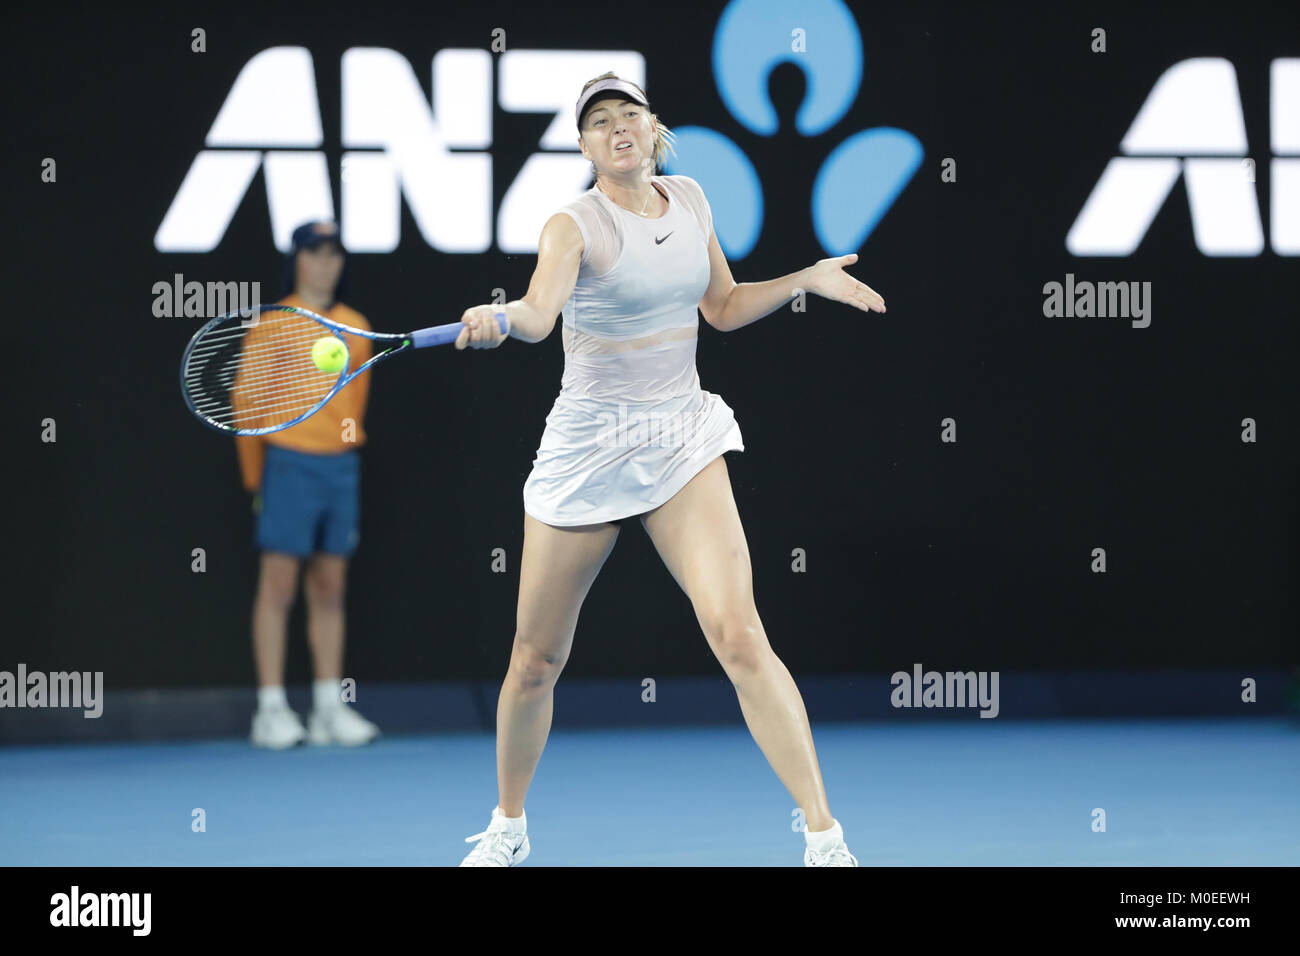 Play maria play. 5:09 / 24:22serena Williams v Maria Sharapova - Australian open 2015 Final | ao Classics.